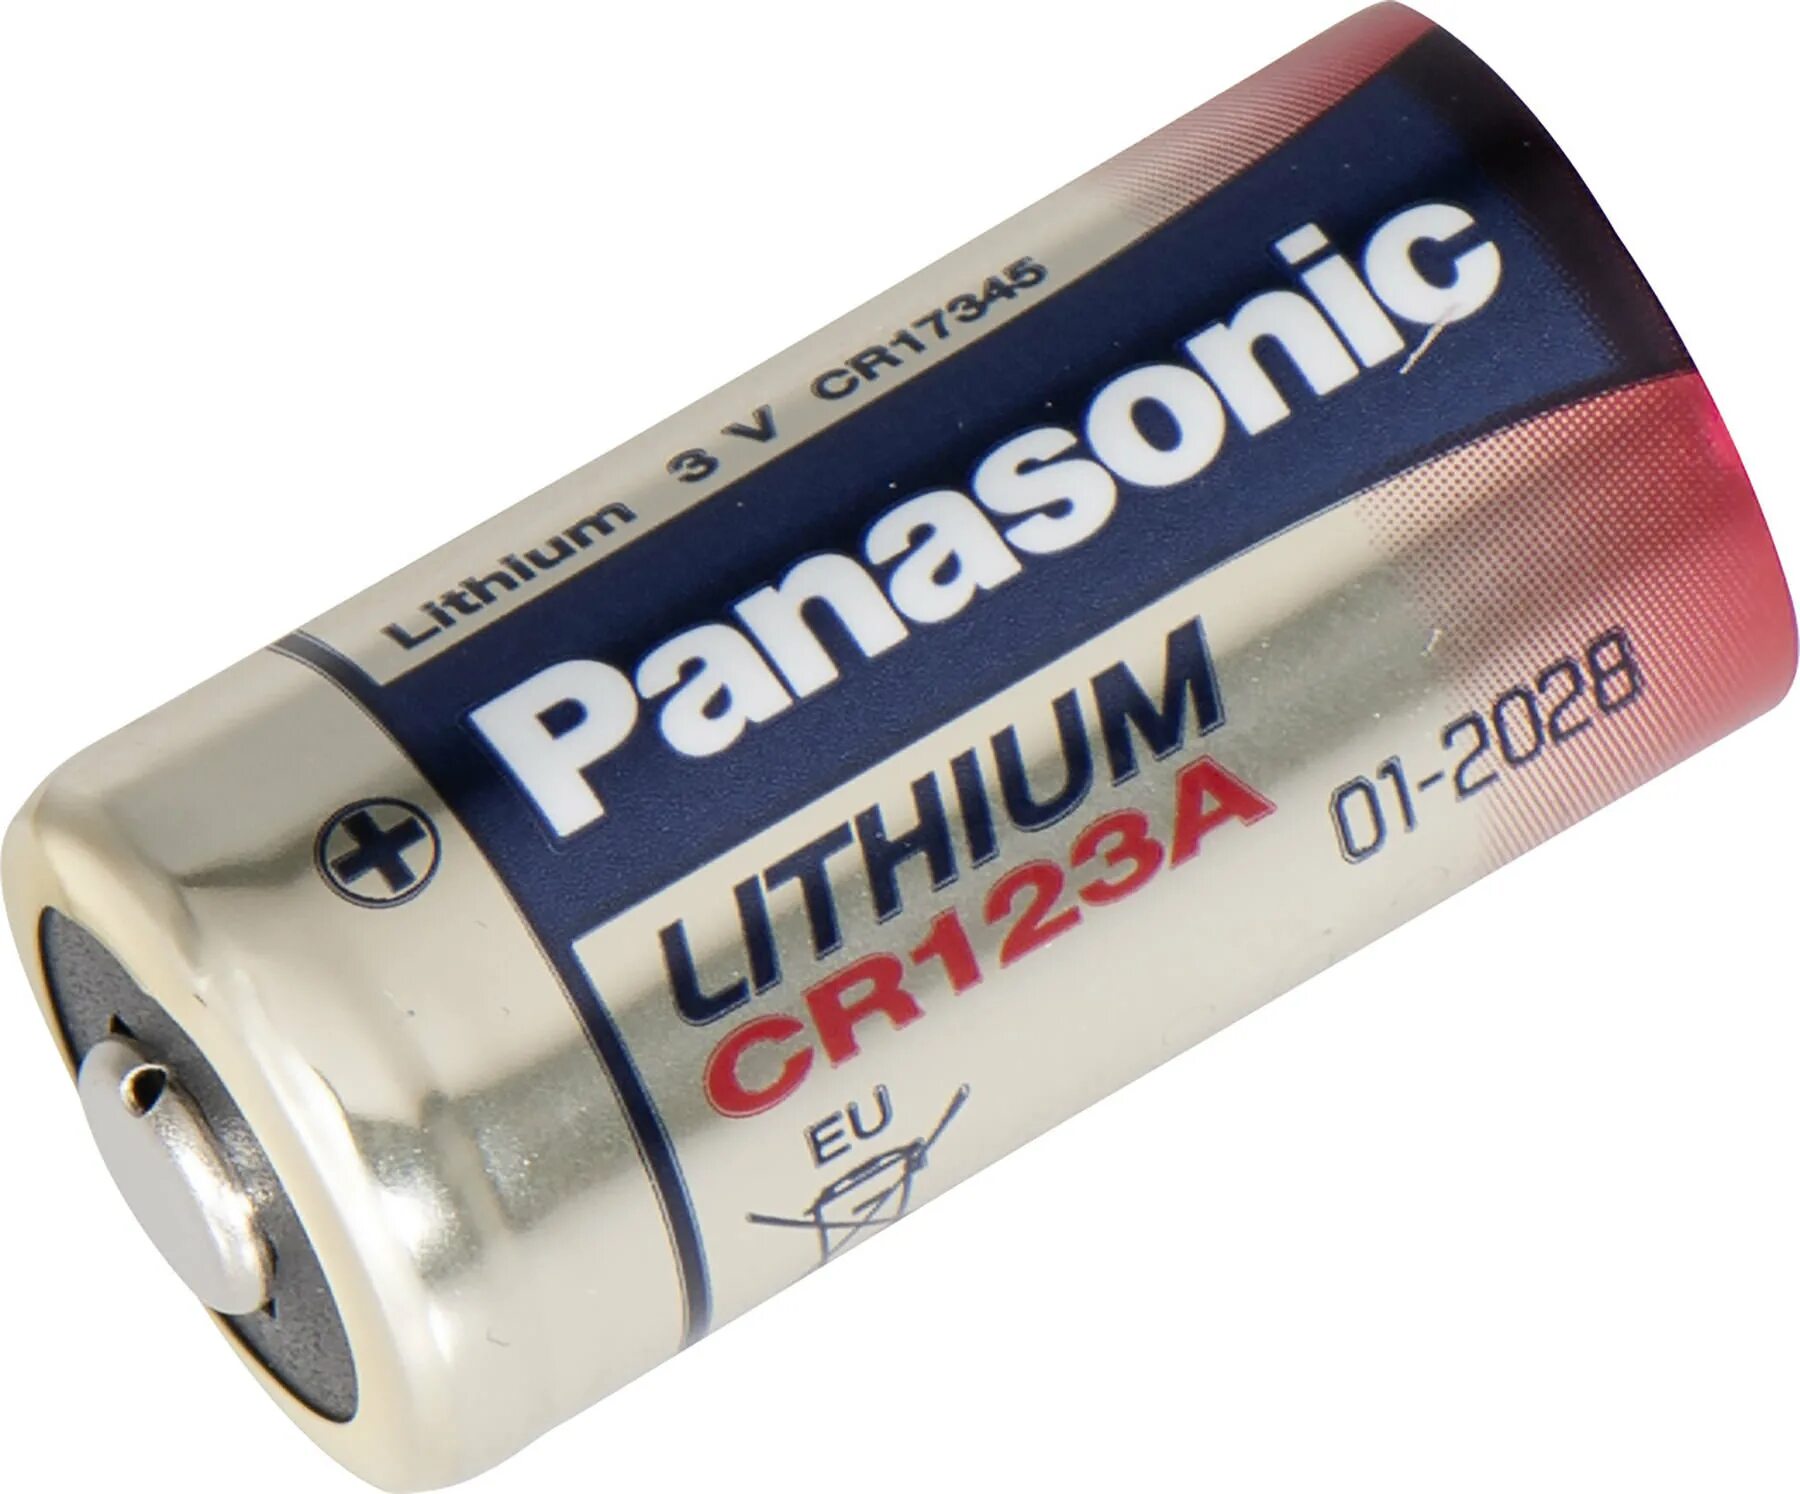 Cr123a батарейка купить. Батарейка Panasonic cr123. Батарея Panasonic cr123 Lithium. Panasonic CR-123 Lithium. Элемент питания cr123a, 3в.